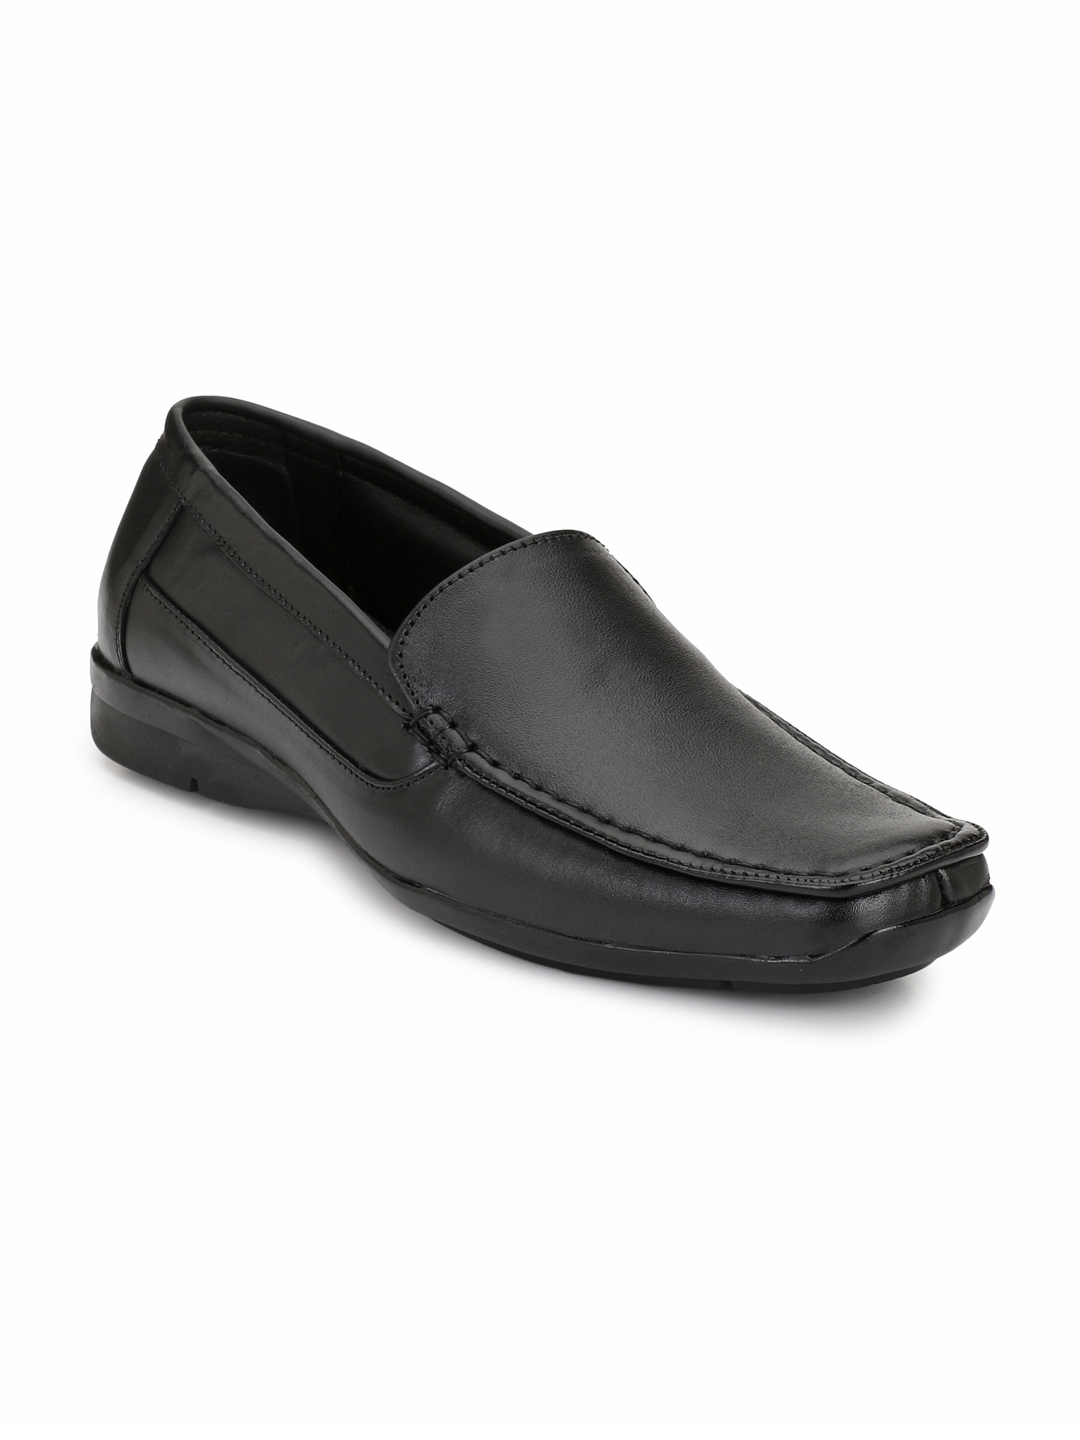 Buy Eego Italy Men Black Formal Leather Slip Ons - Formal Shoes for Men ...